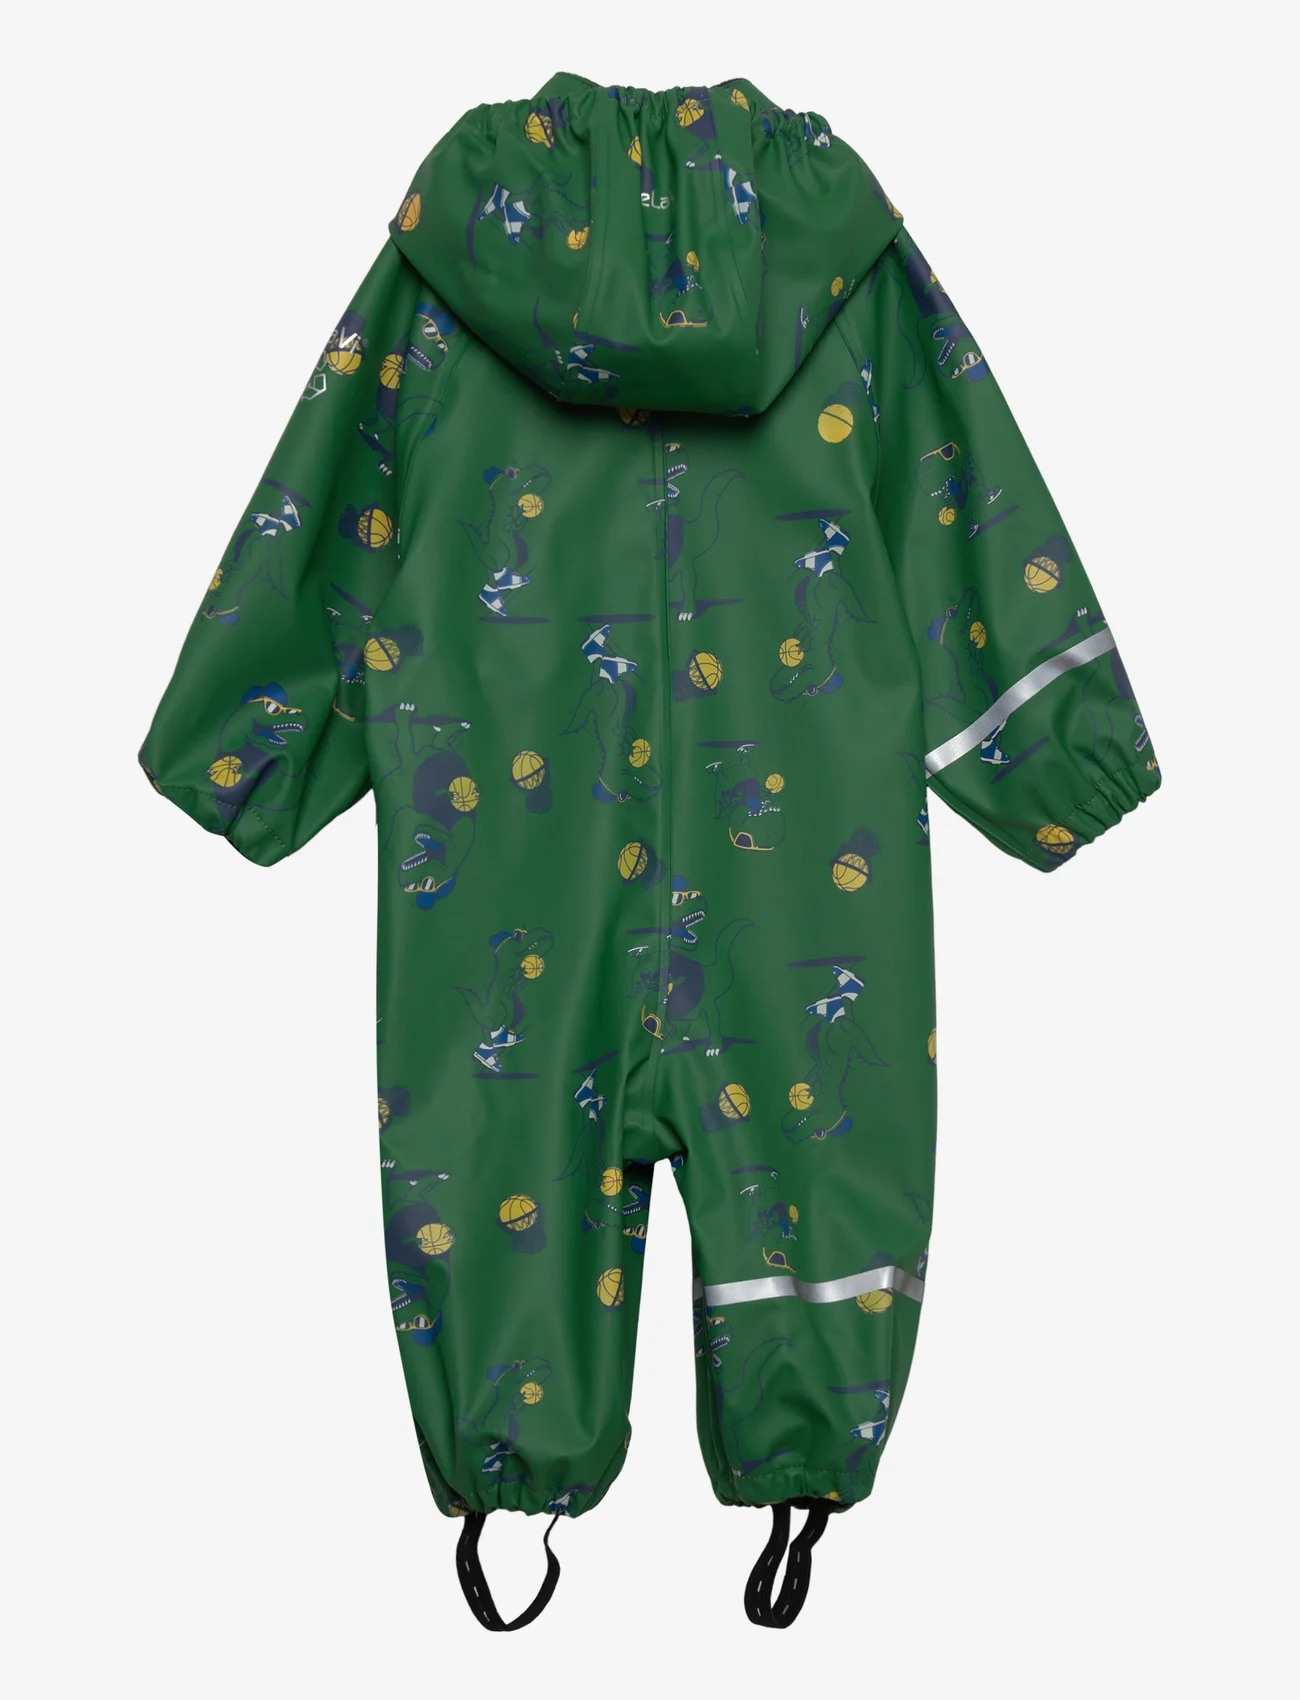 CeLaVi - Rainwear Suit - AOP - regenkleding - foliage green - 1